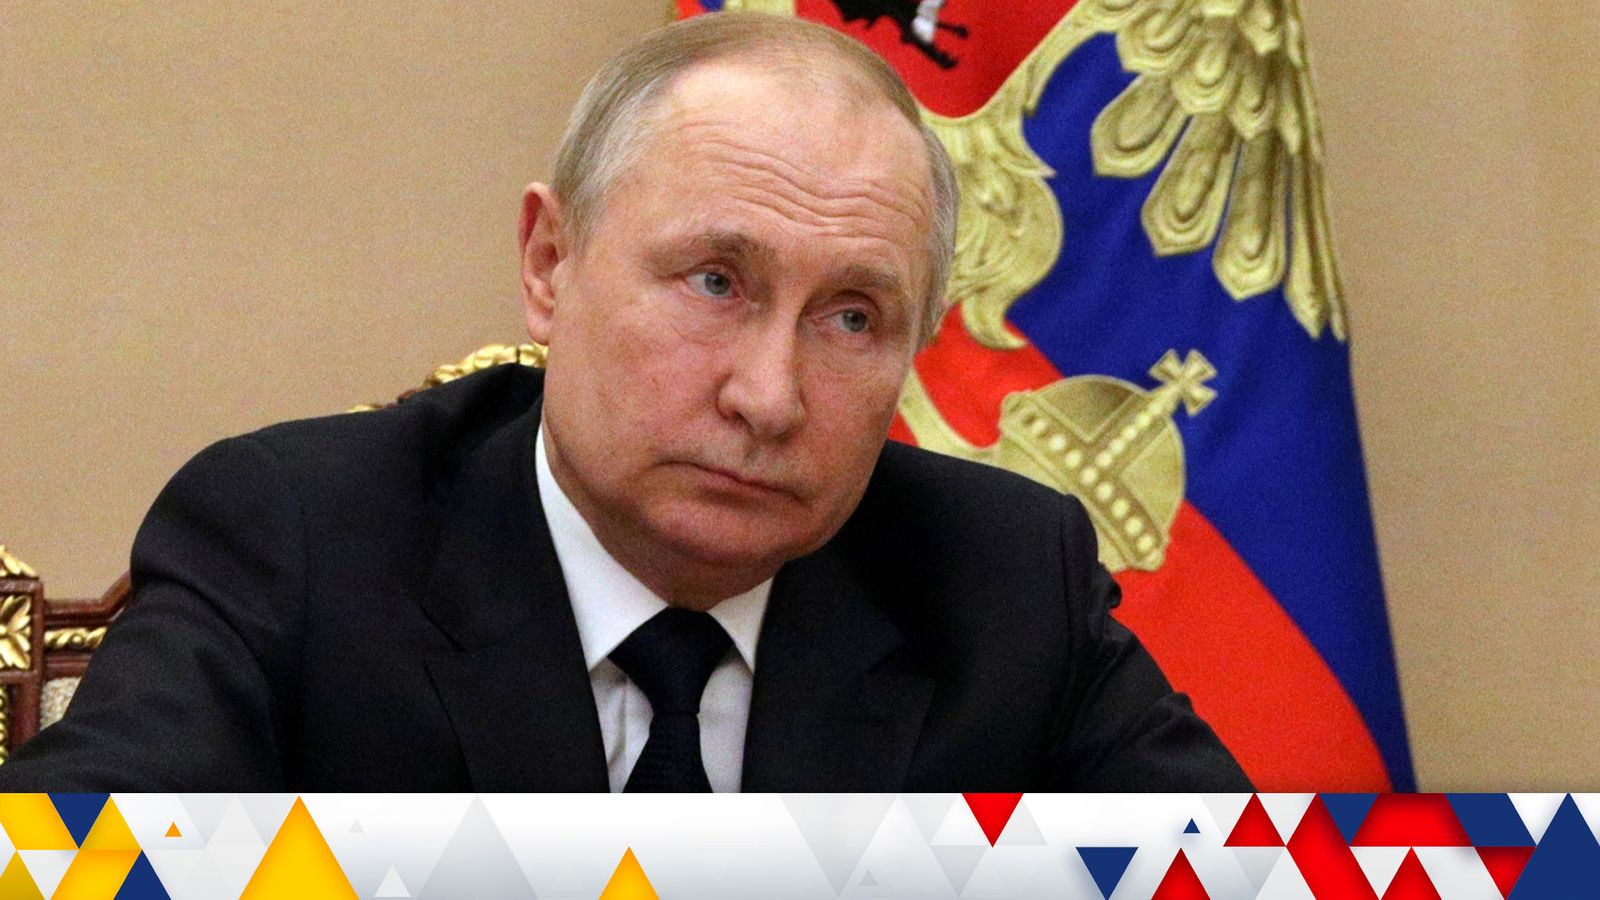 Guerre d’Ukraine : Poutine insiste sur le fait que la Russie surmontera les “problèmes et difficultés” causés par les sanctions |  Actualité économique